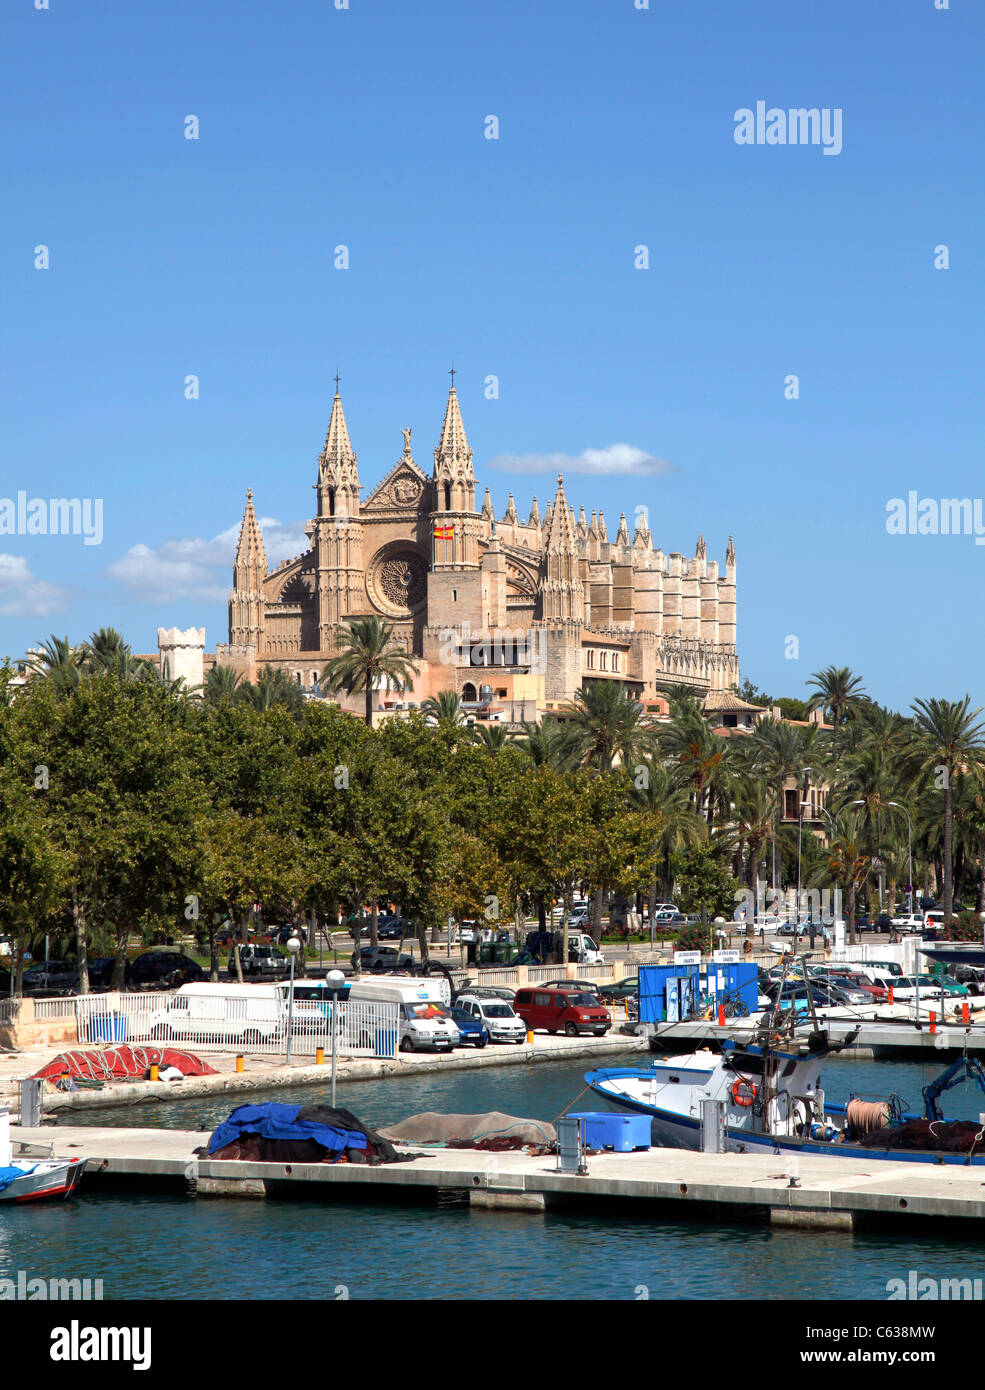 La Seu Cathedral at Palma in Majoca Spain. Stock Photo